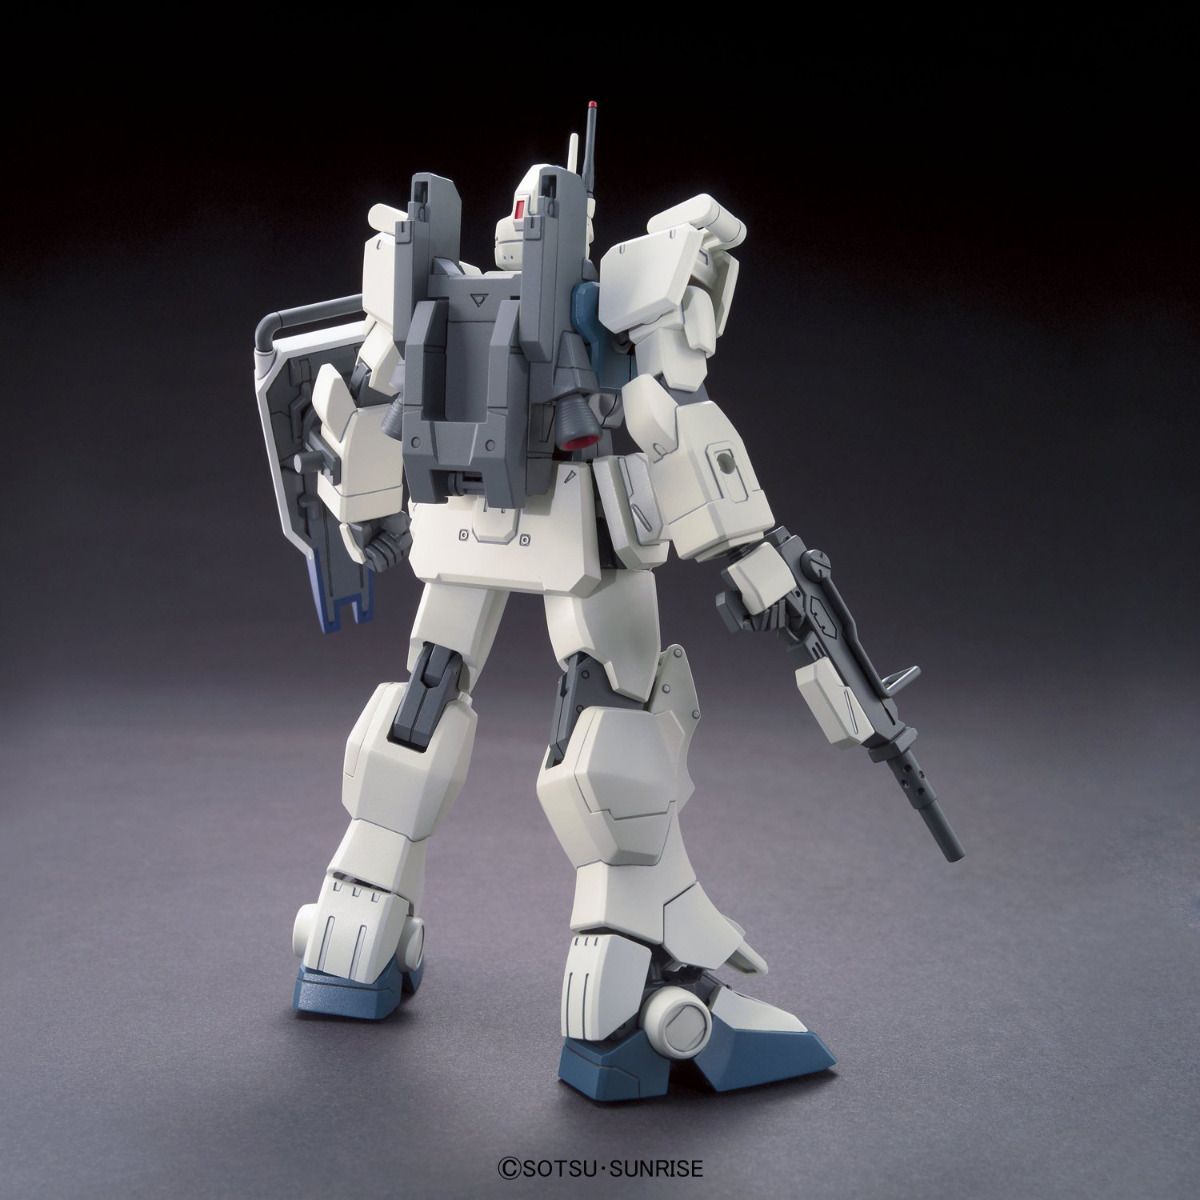 HGUC #155 RX-79[G] Ez-8 Gundam Ez8